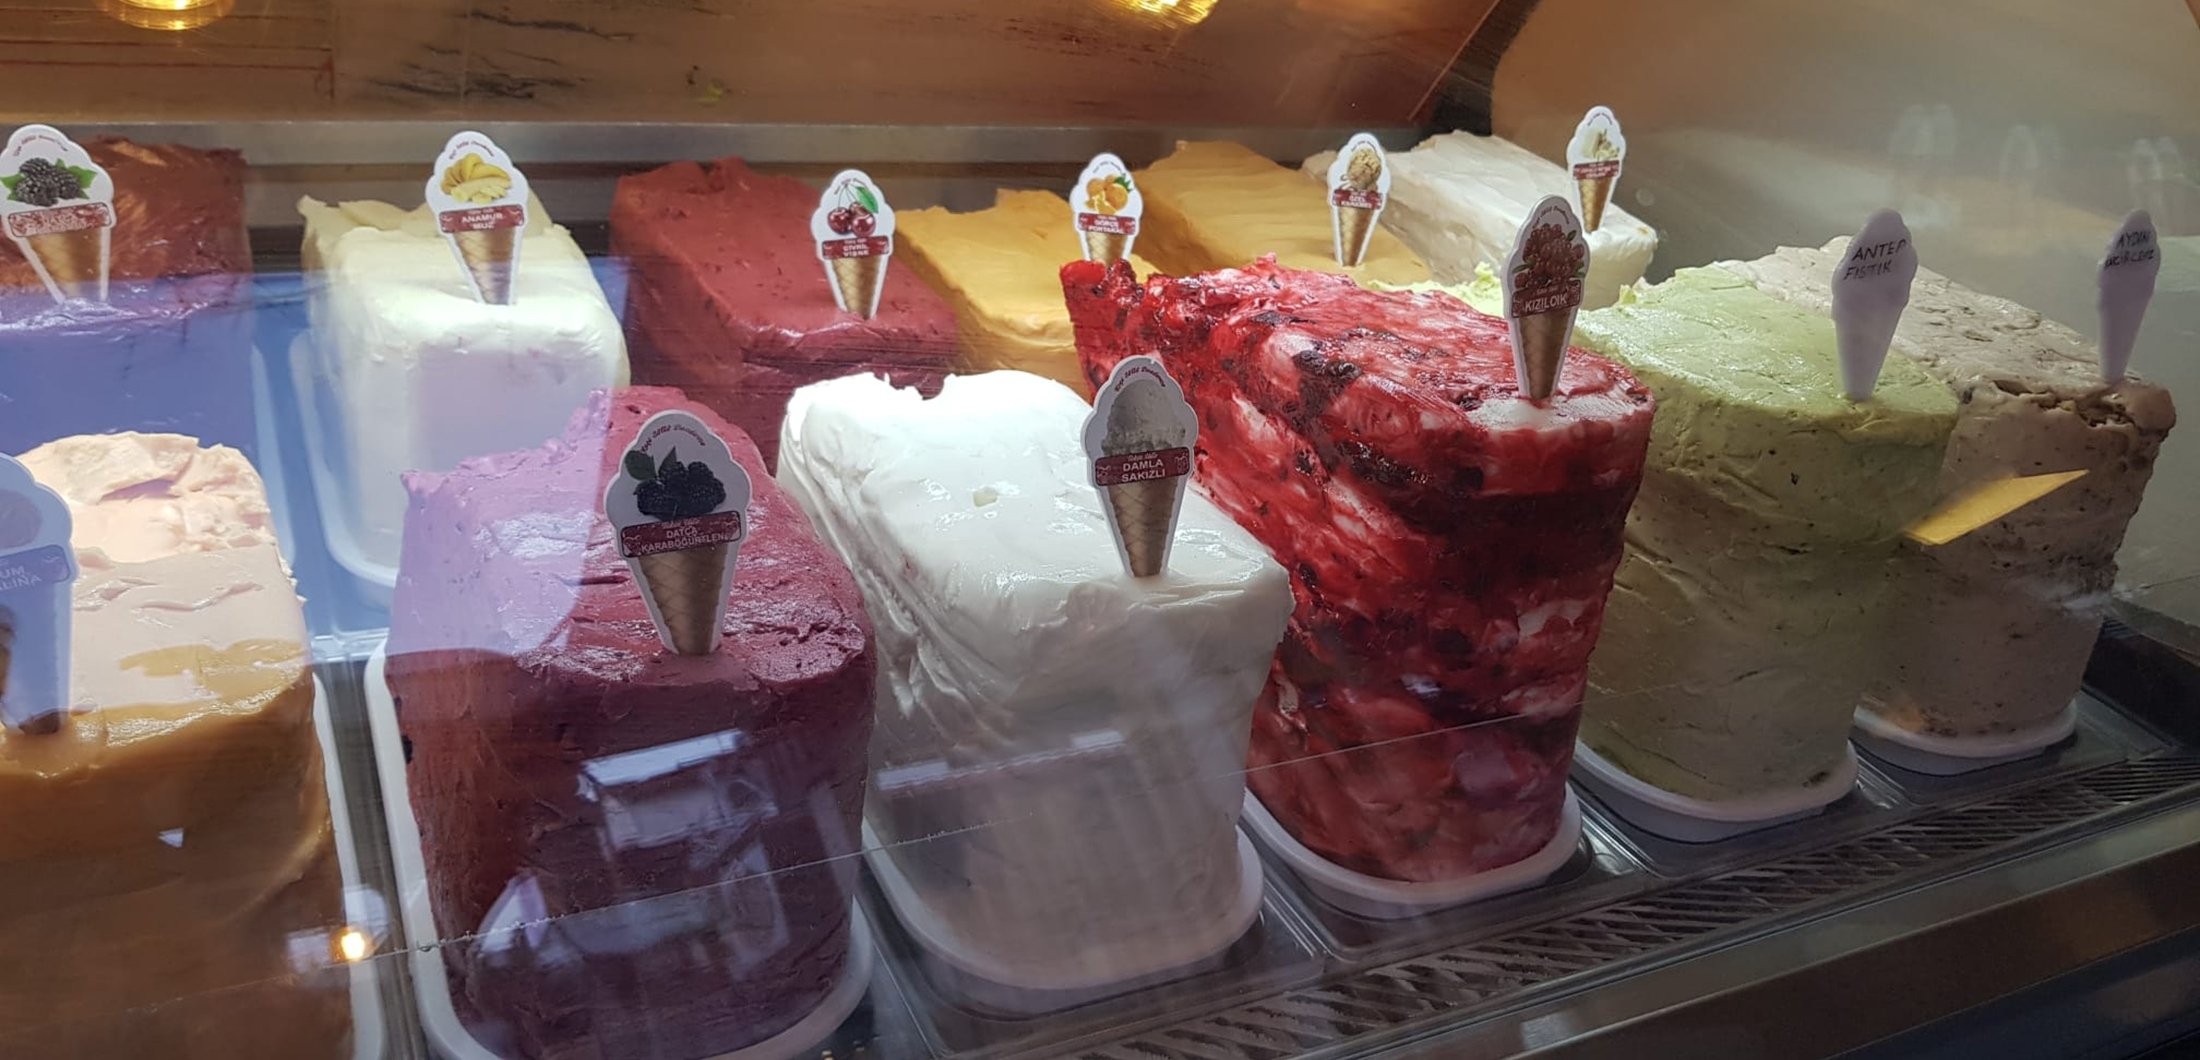 Berbagai rasa es krim di Toko Es Krim Tekin Usta Keçi Sütü di Muğla, Turki.  (Foto milik Leyla Yvonne Ergil)